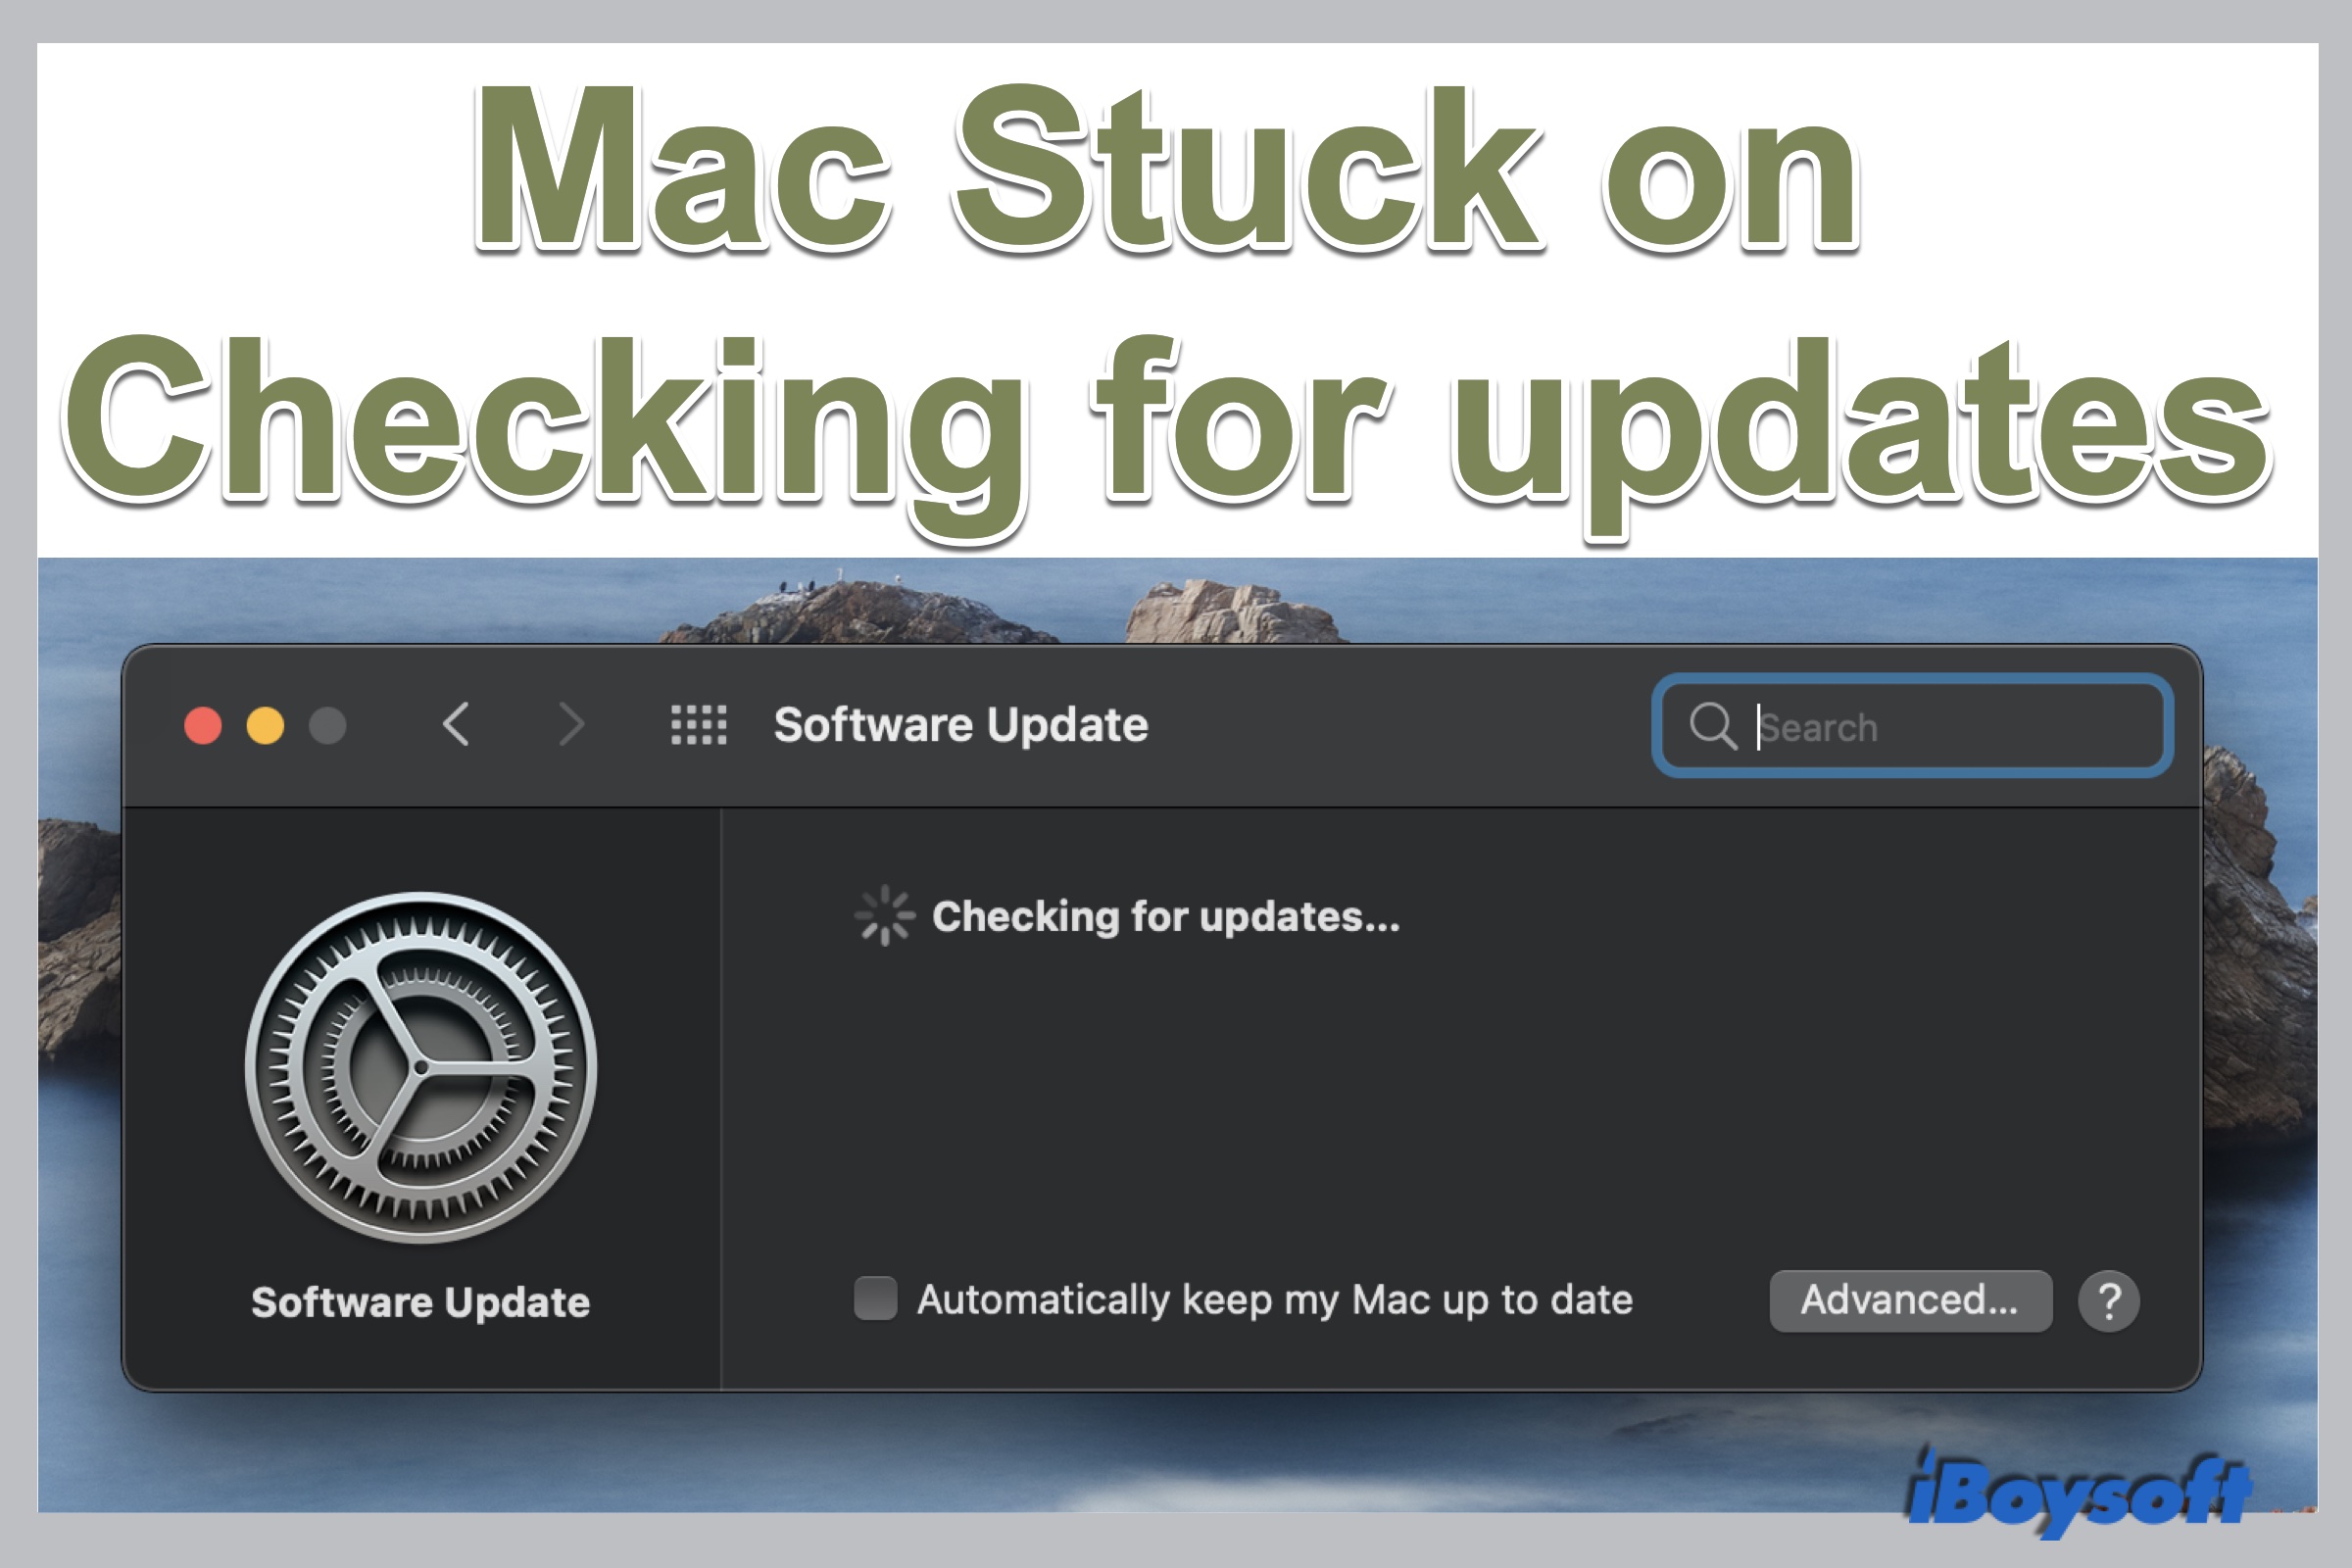 Atualize o sistema operacional: Mantenha seu sistema operacional atualizado para aproveitar melhorias de desempenho.
Execute uma verificação de vírus: Verifique se o seu Mac está livre de malwares que possam afetar o desempenho.